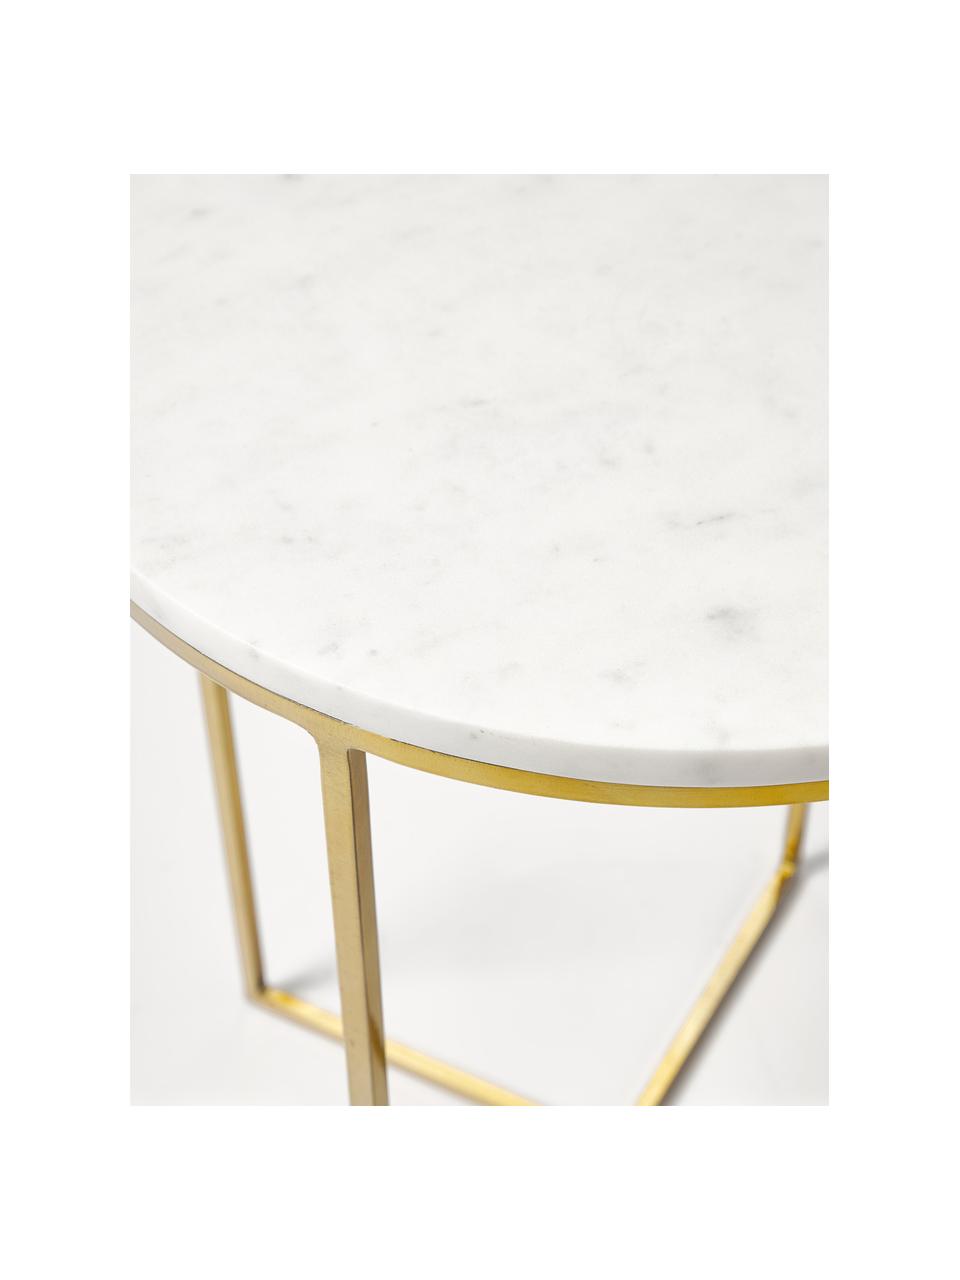 Runder Marmor-Beistelltisch Alys, Tischplatte: Marmor, Gestell: Metall, pulverbeschichtet, Weiss marmoriert, Goldfarben, Ø 40 x H 50 cm